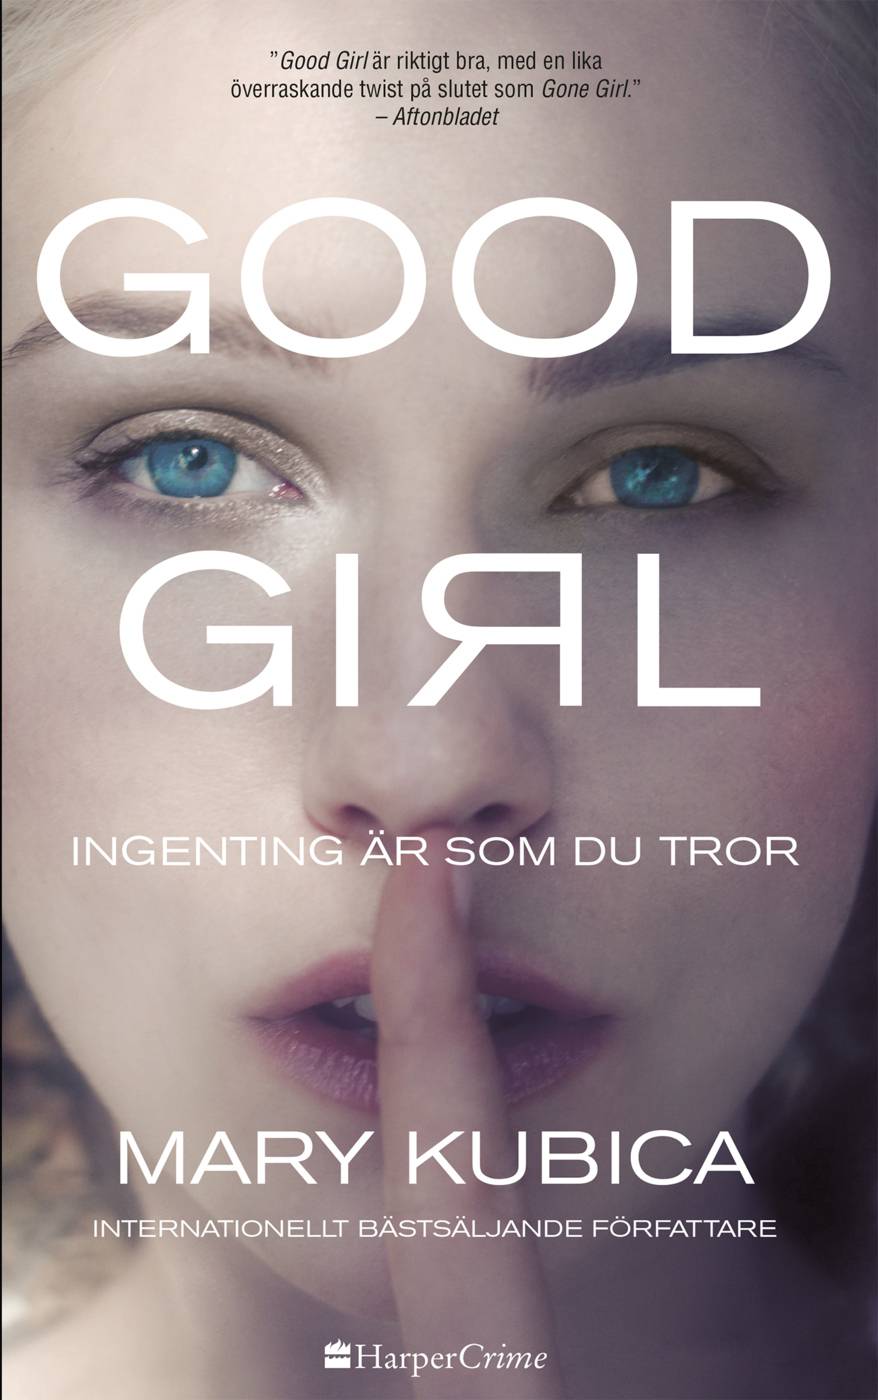 Good Girl : ingenting är som du tror